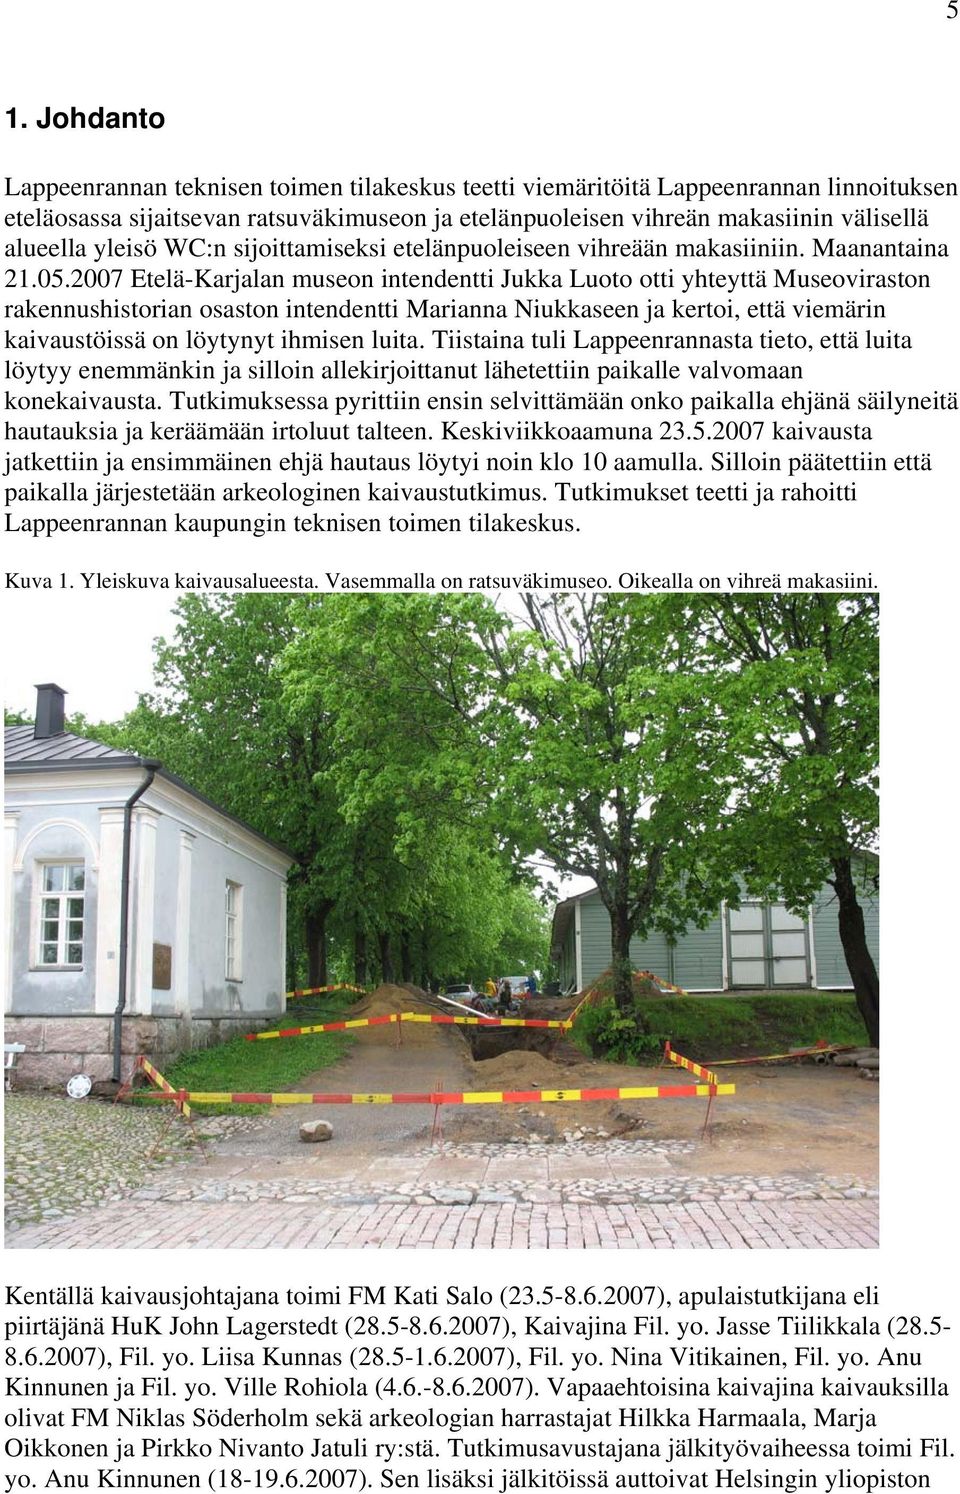 2007 Etelä-Karjalan museon intendentti Jukka Luoto otti yhteyttä Museoviraston rakennushistorian osaston intendentti Marianna Niukkaseen ja kertoi, että viemärin kaivaustöissä on löytynyt ihmisen